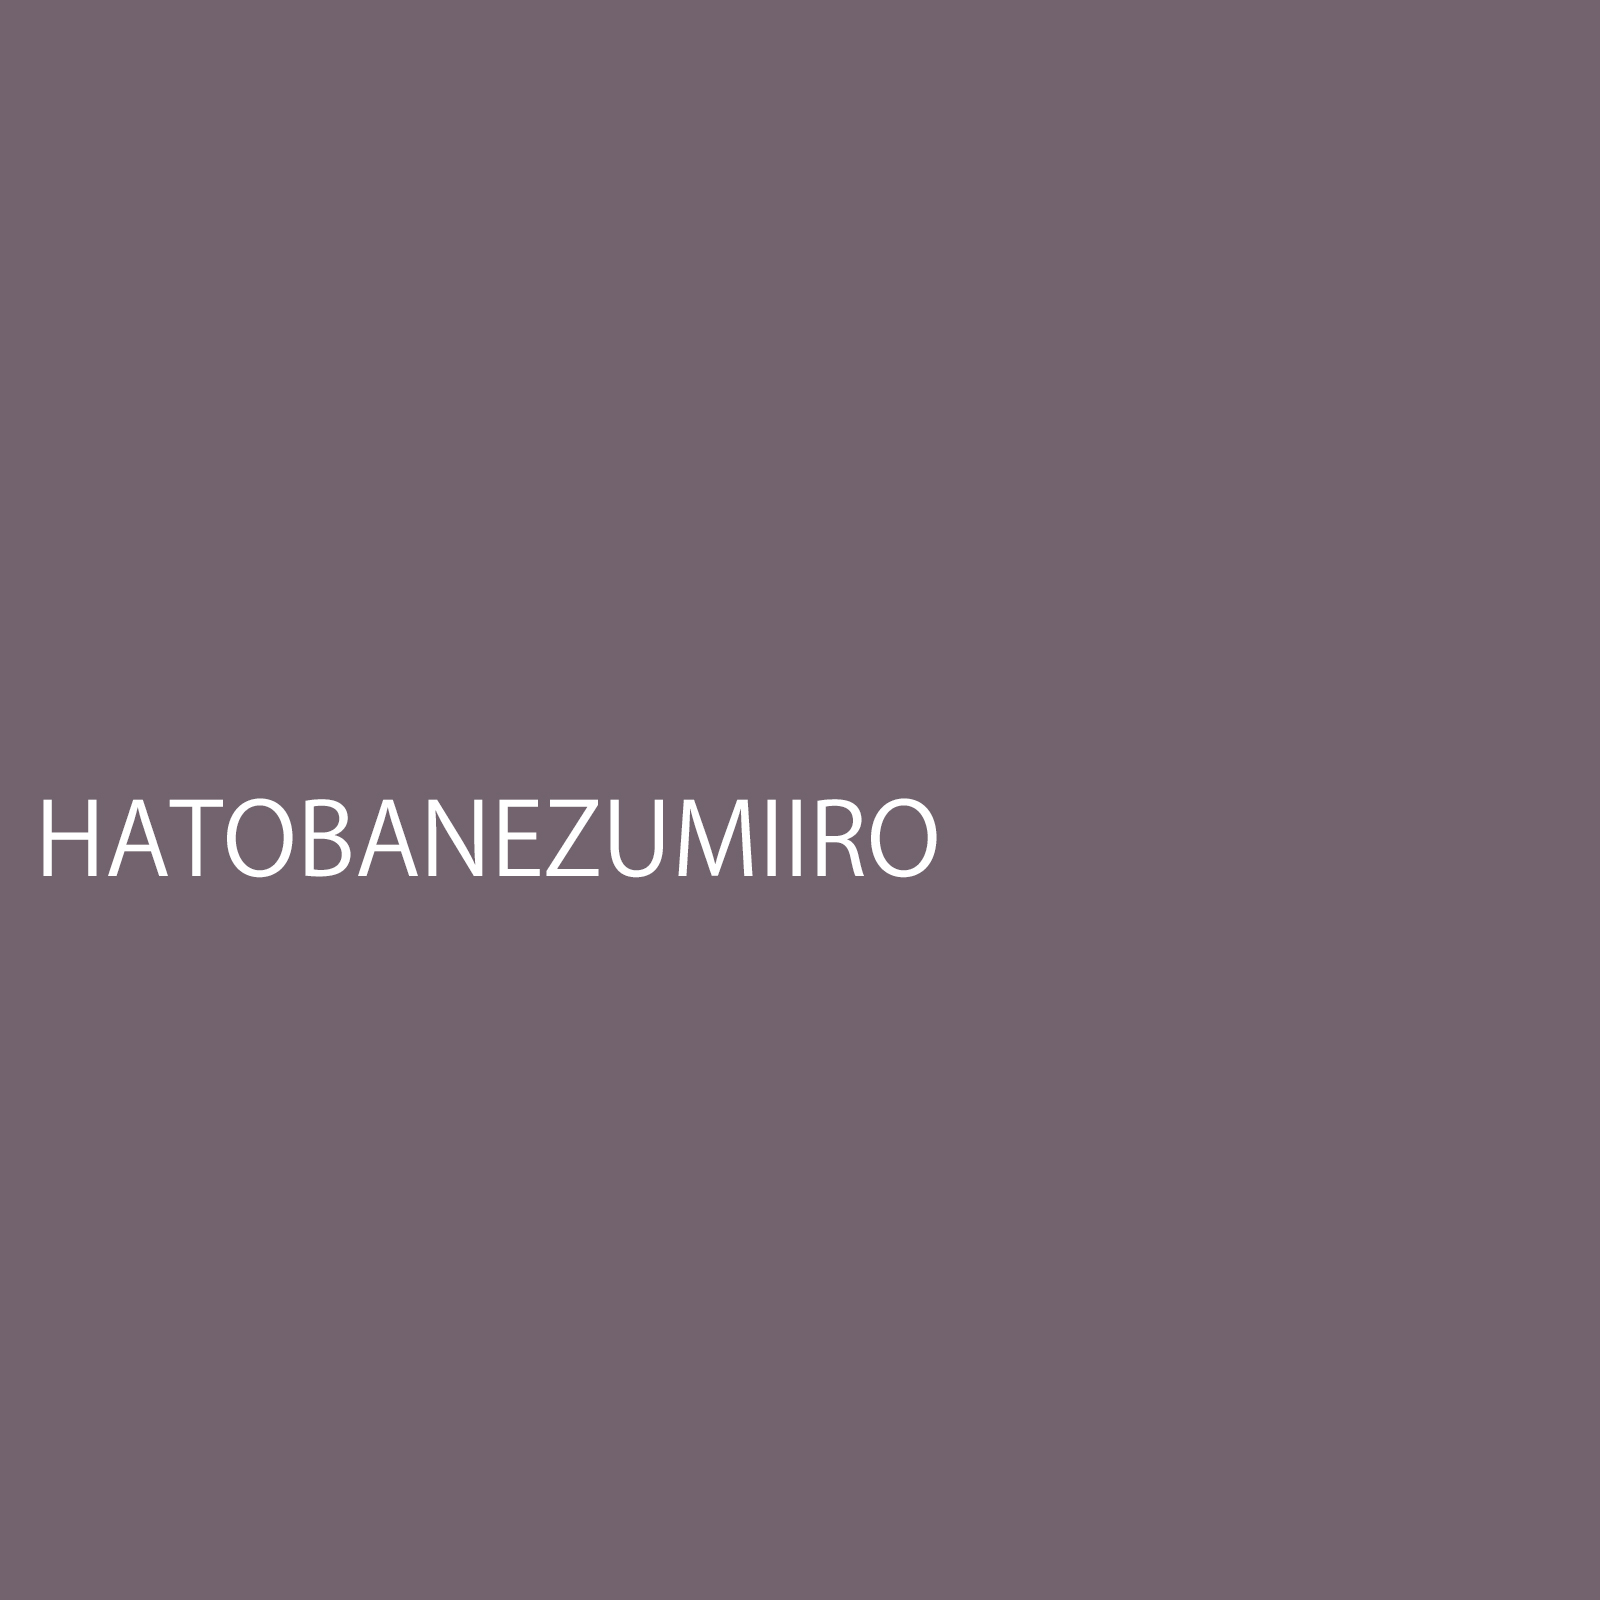 hatobanezumiiro